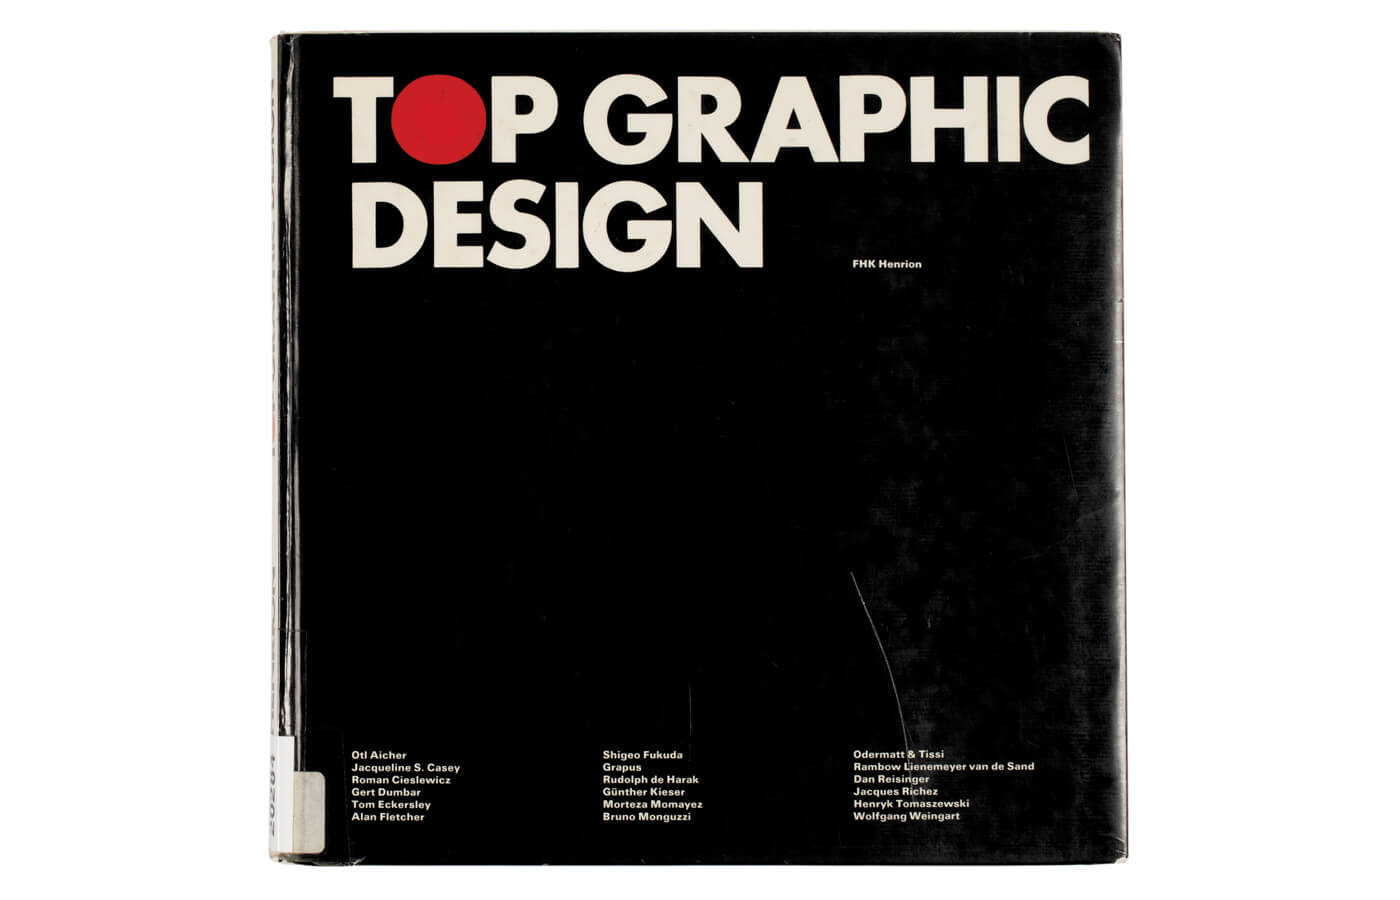 Top Graphic Design